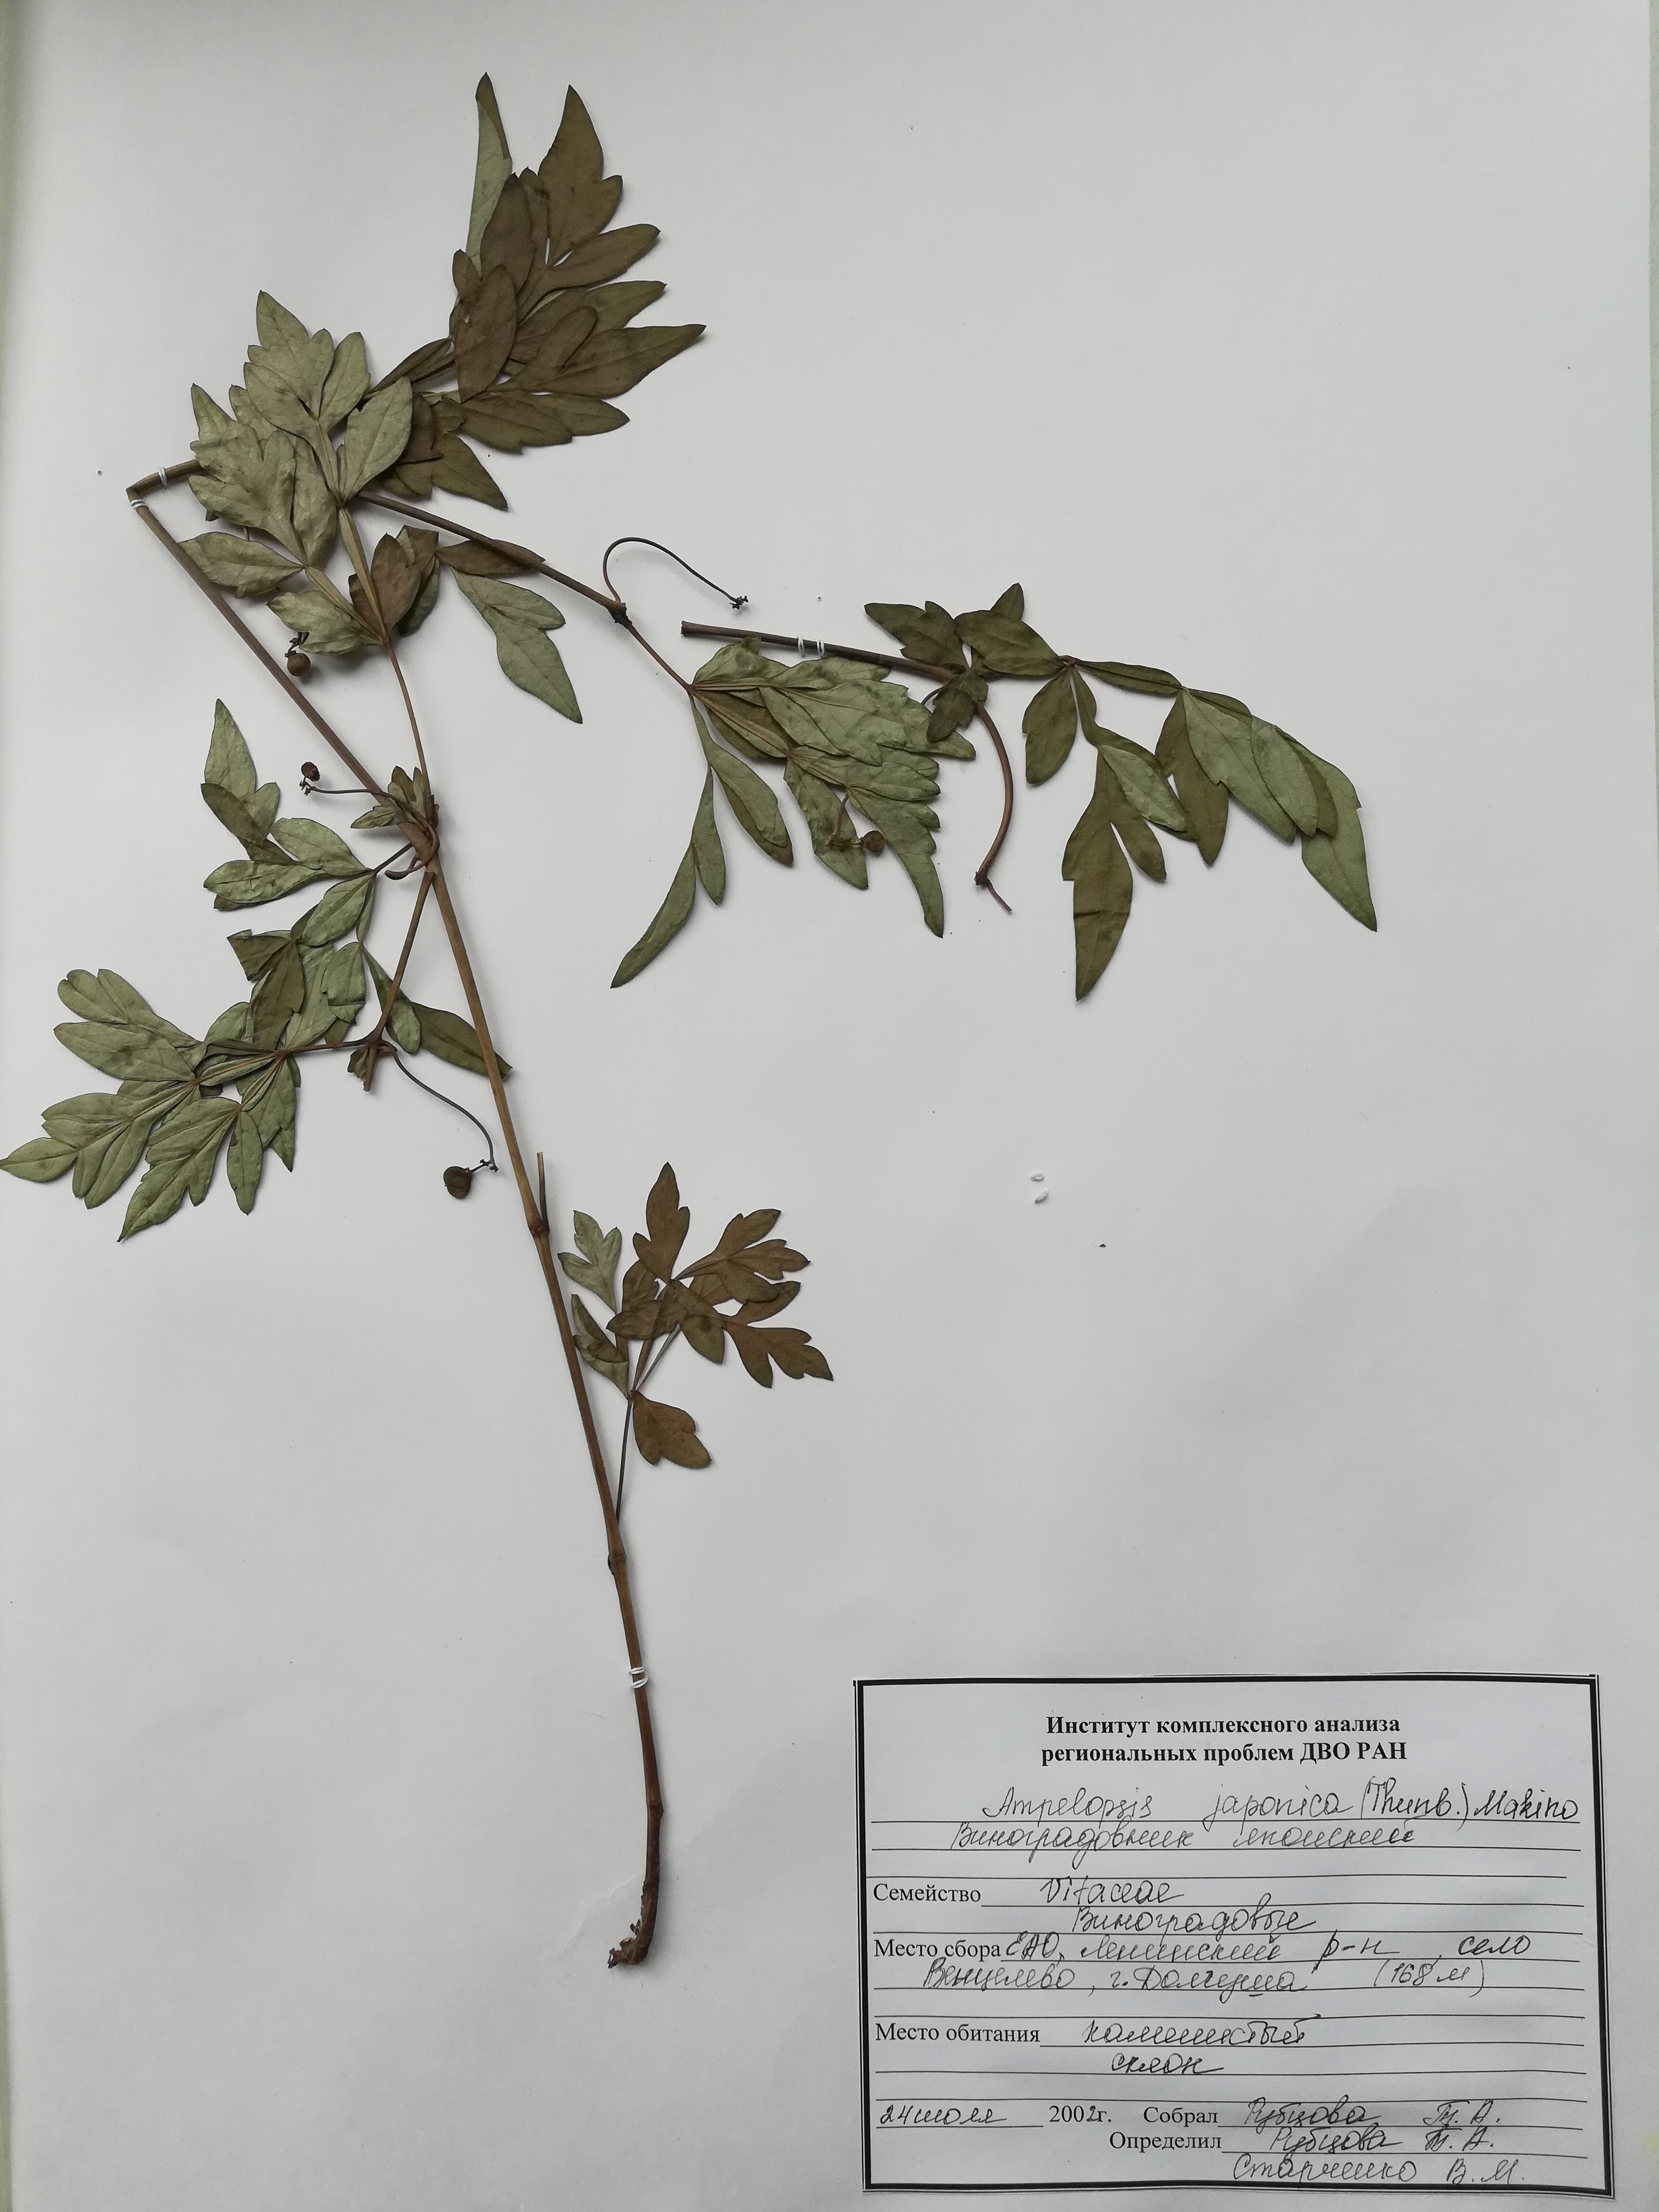 Herbarium specimen of Ampelopsis japonica.